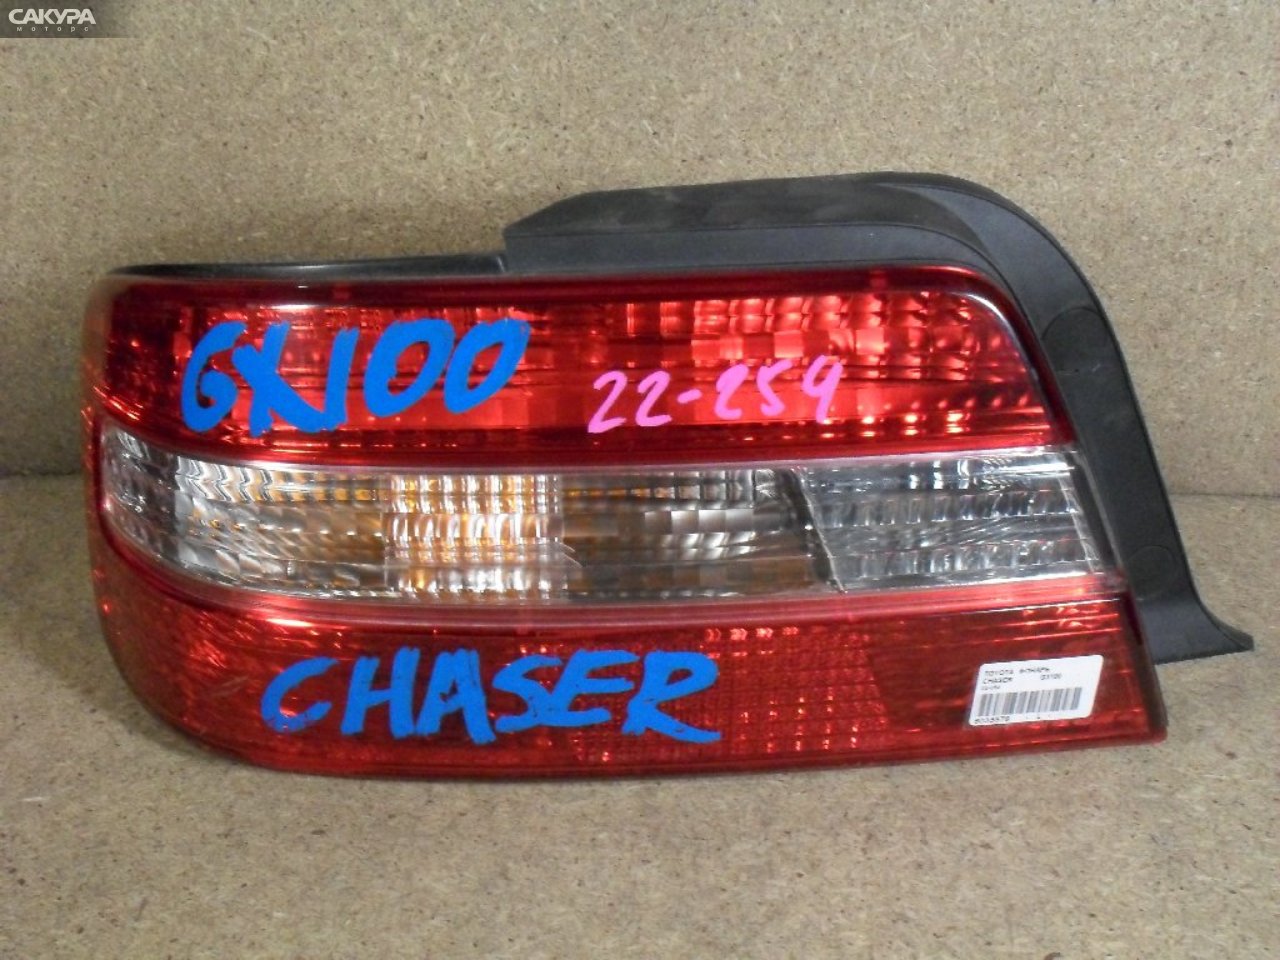 Фонарь стоп-сигнала левый Toyota Chaser GX100 22-254: купить в Сакура Абакан.